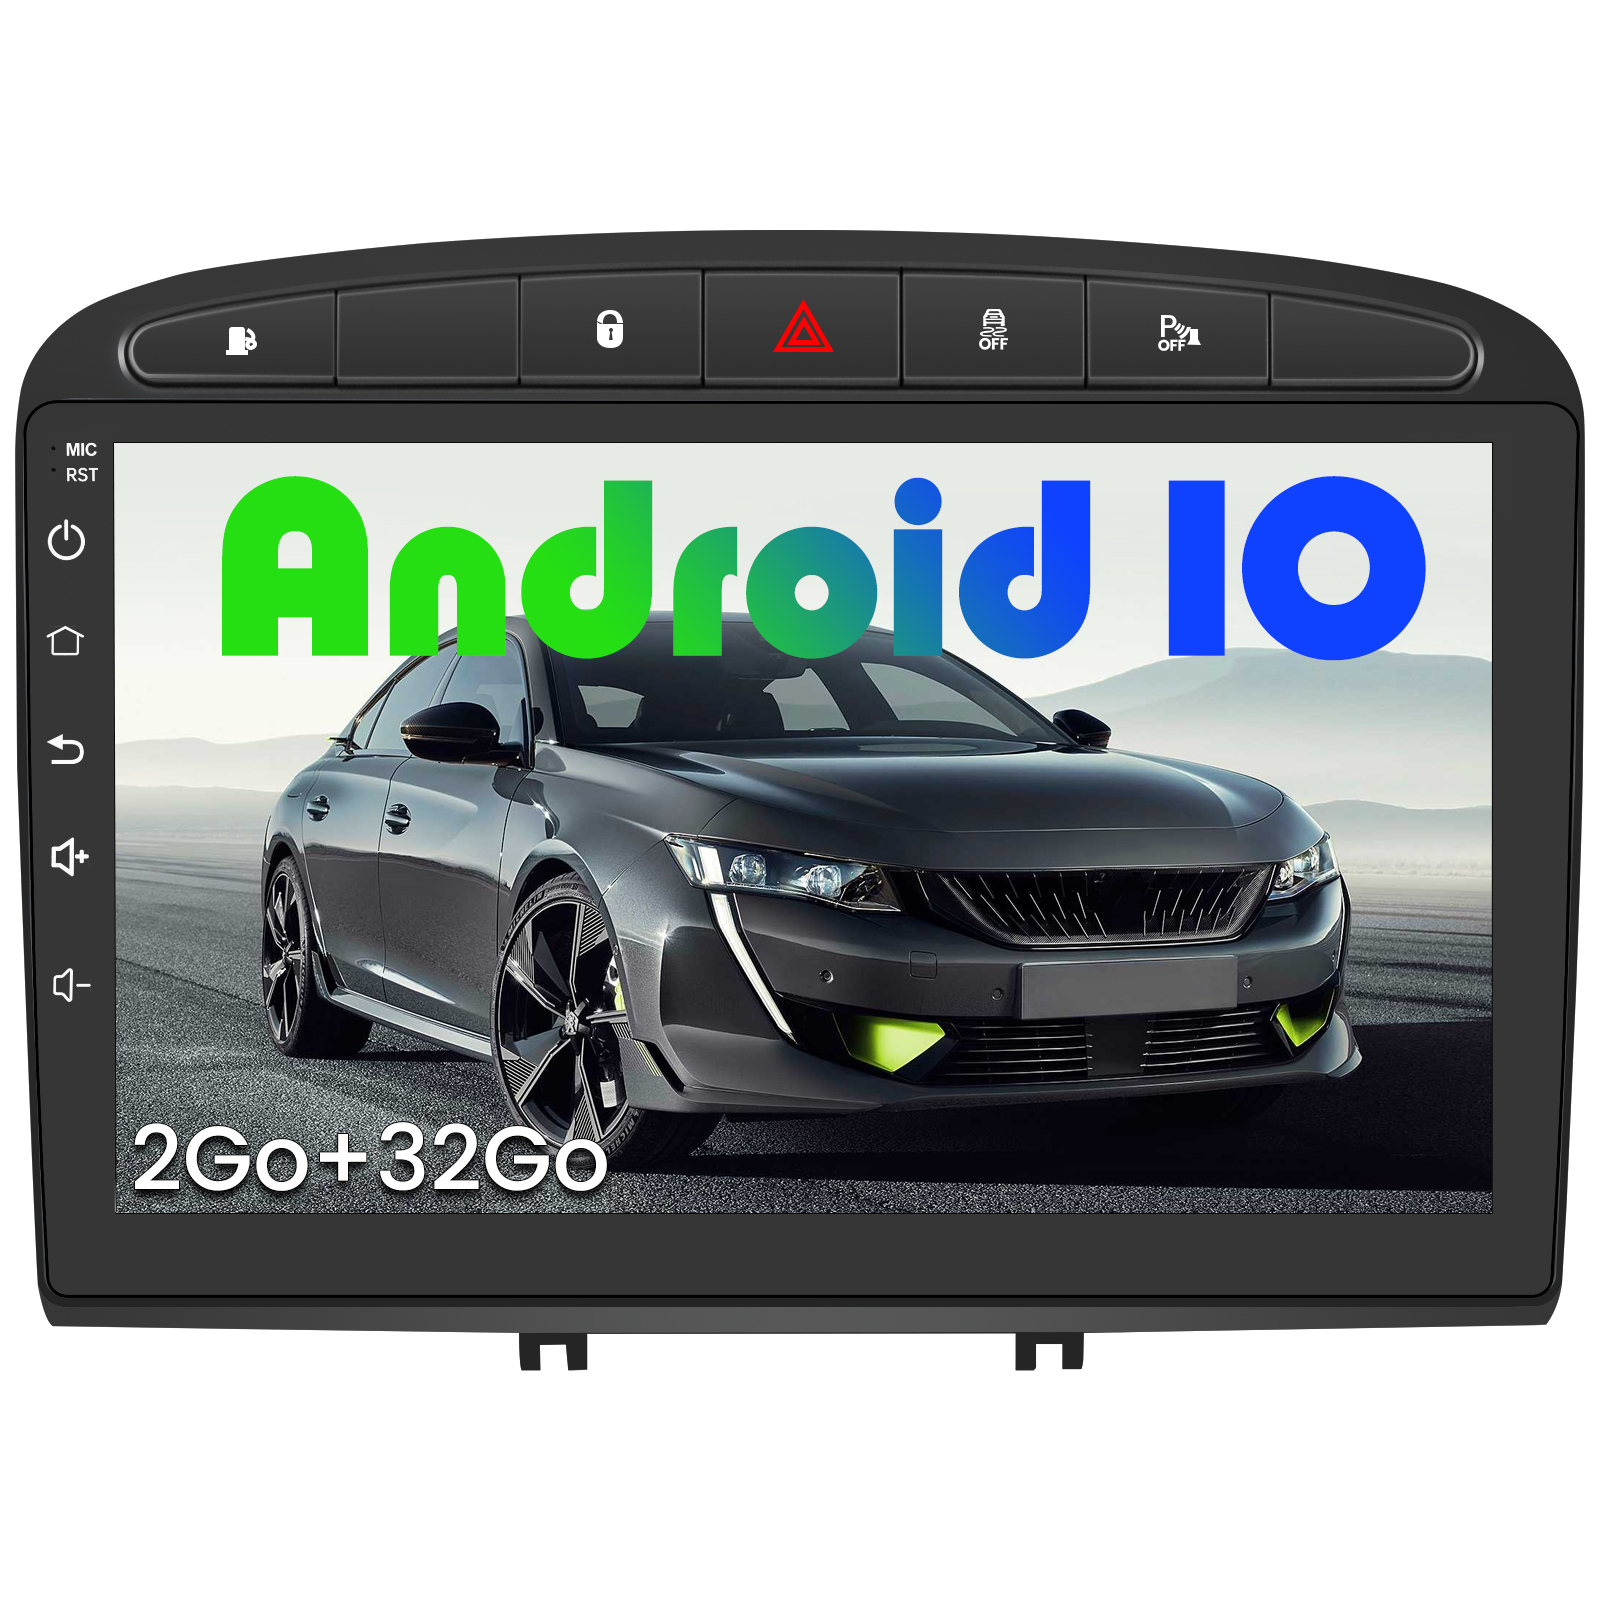 AWESAFE Autoradio pour Peugeot 206 2000-2008【2Go+32Go】 Autoradio Android 10.0 GPS Navigation avec WiFi/Écran Tactile HD/Commande au Volant/MirrorLink/Vue arrière de Recul/Appel Bluetooth/RDS/USB/FM 